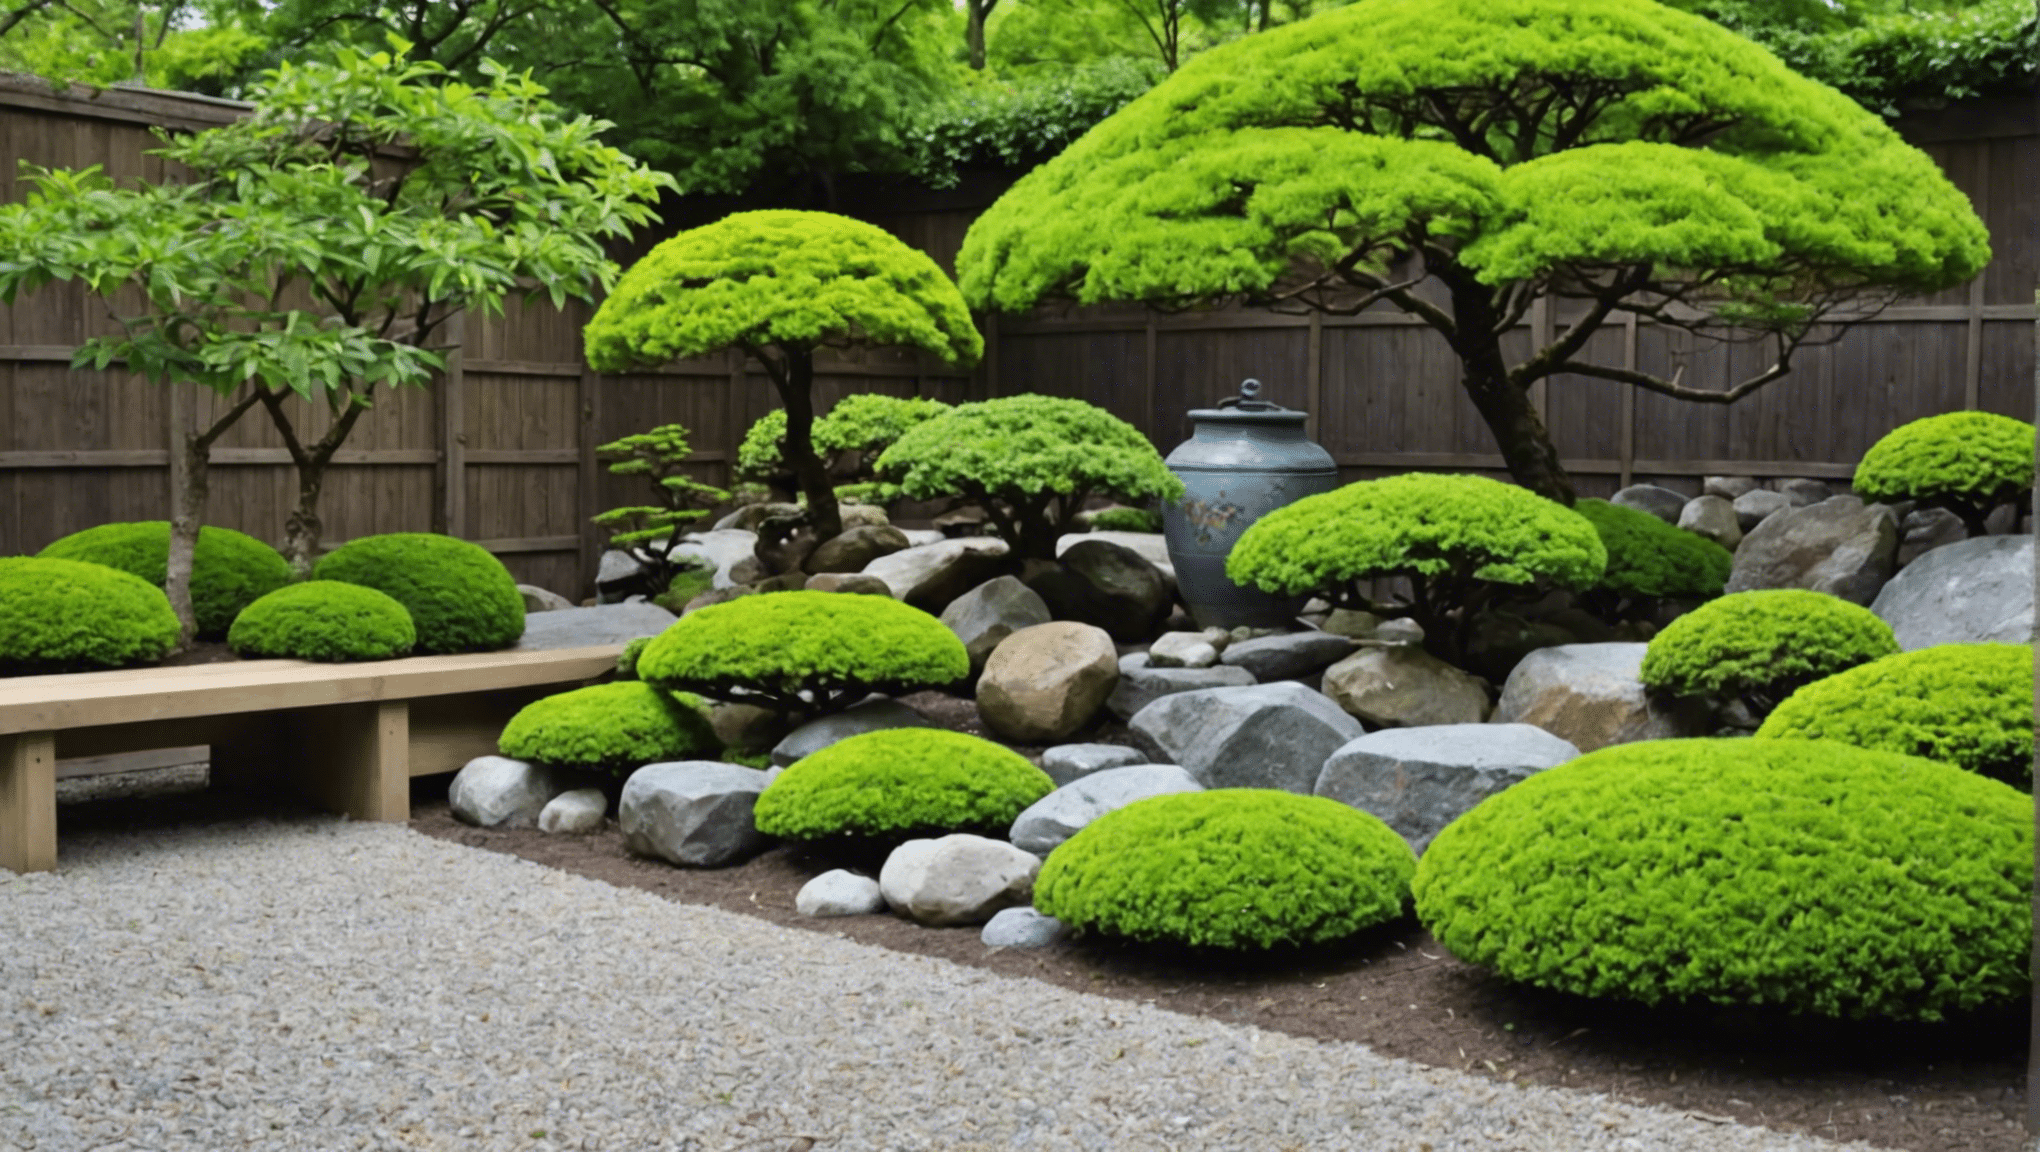 Japon bahçecilik aletlerinin, uzman görüşleri ve tavsiyeleriyle göz kamaştırıcı bir bahçe yaratmanın anahtarı olup olmadığını keşfedin.